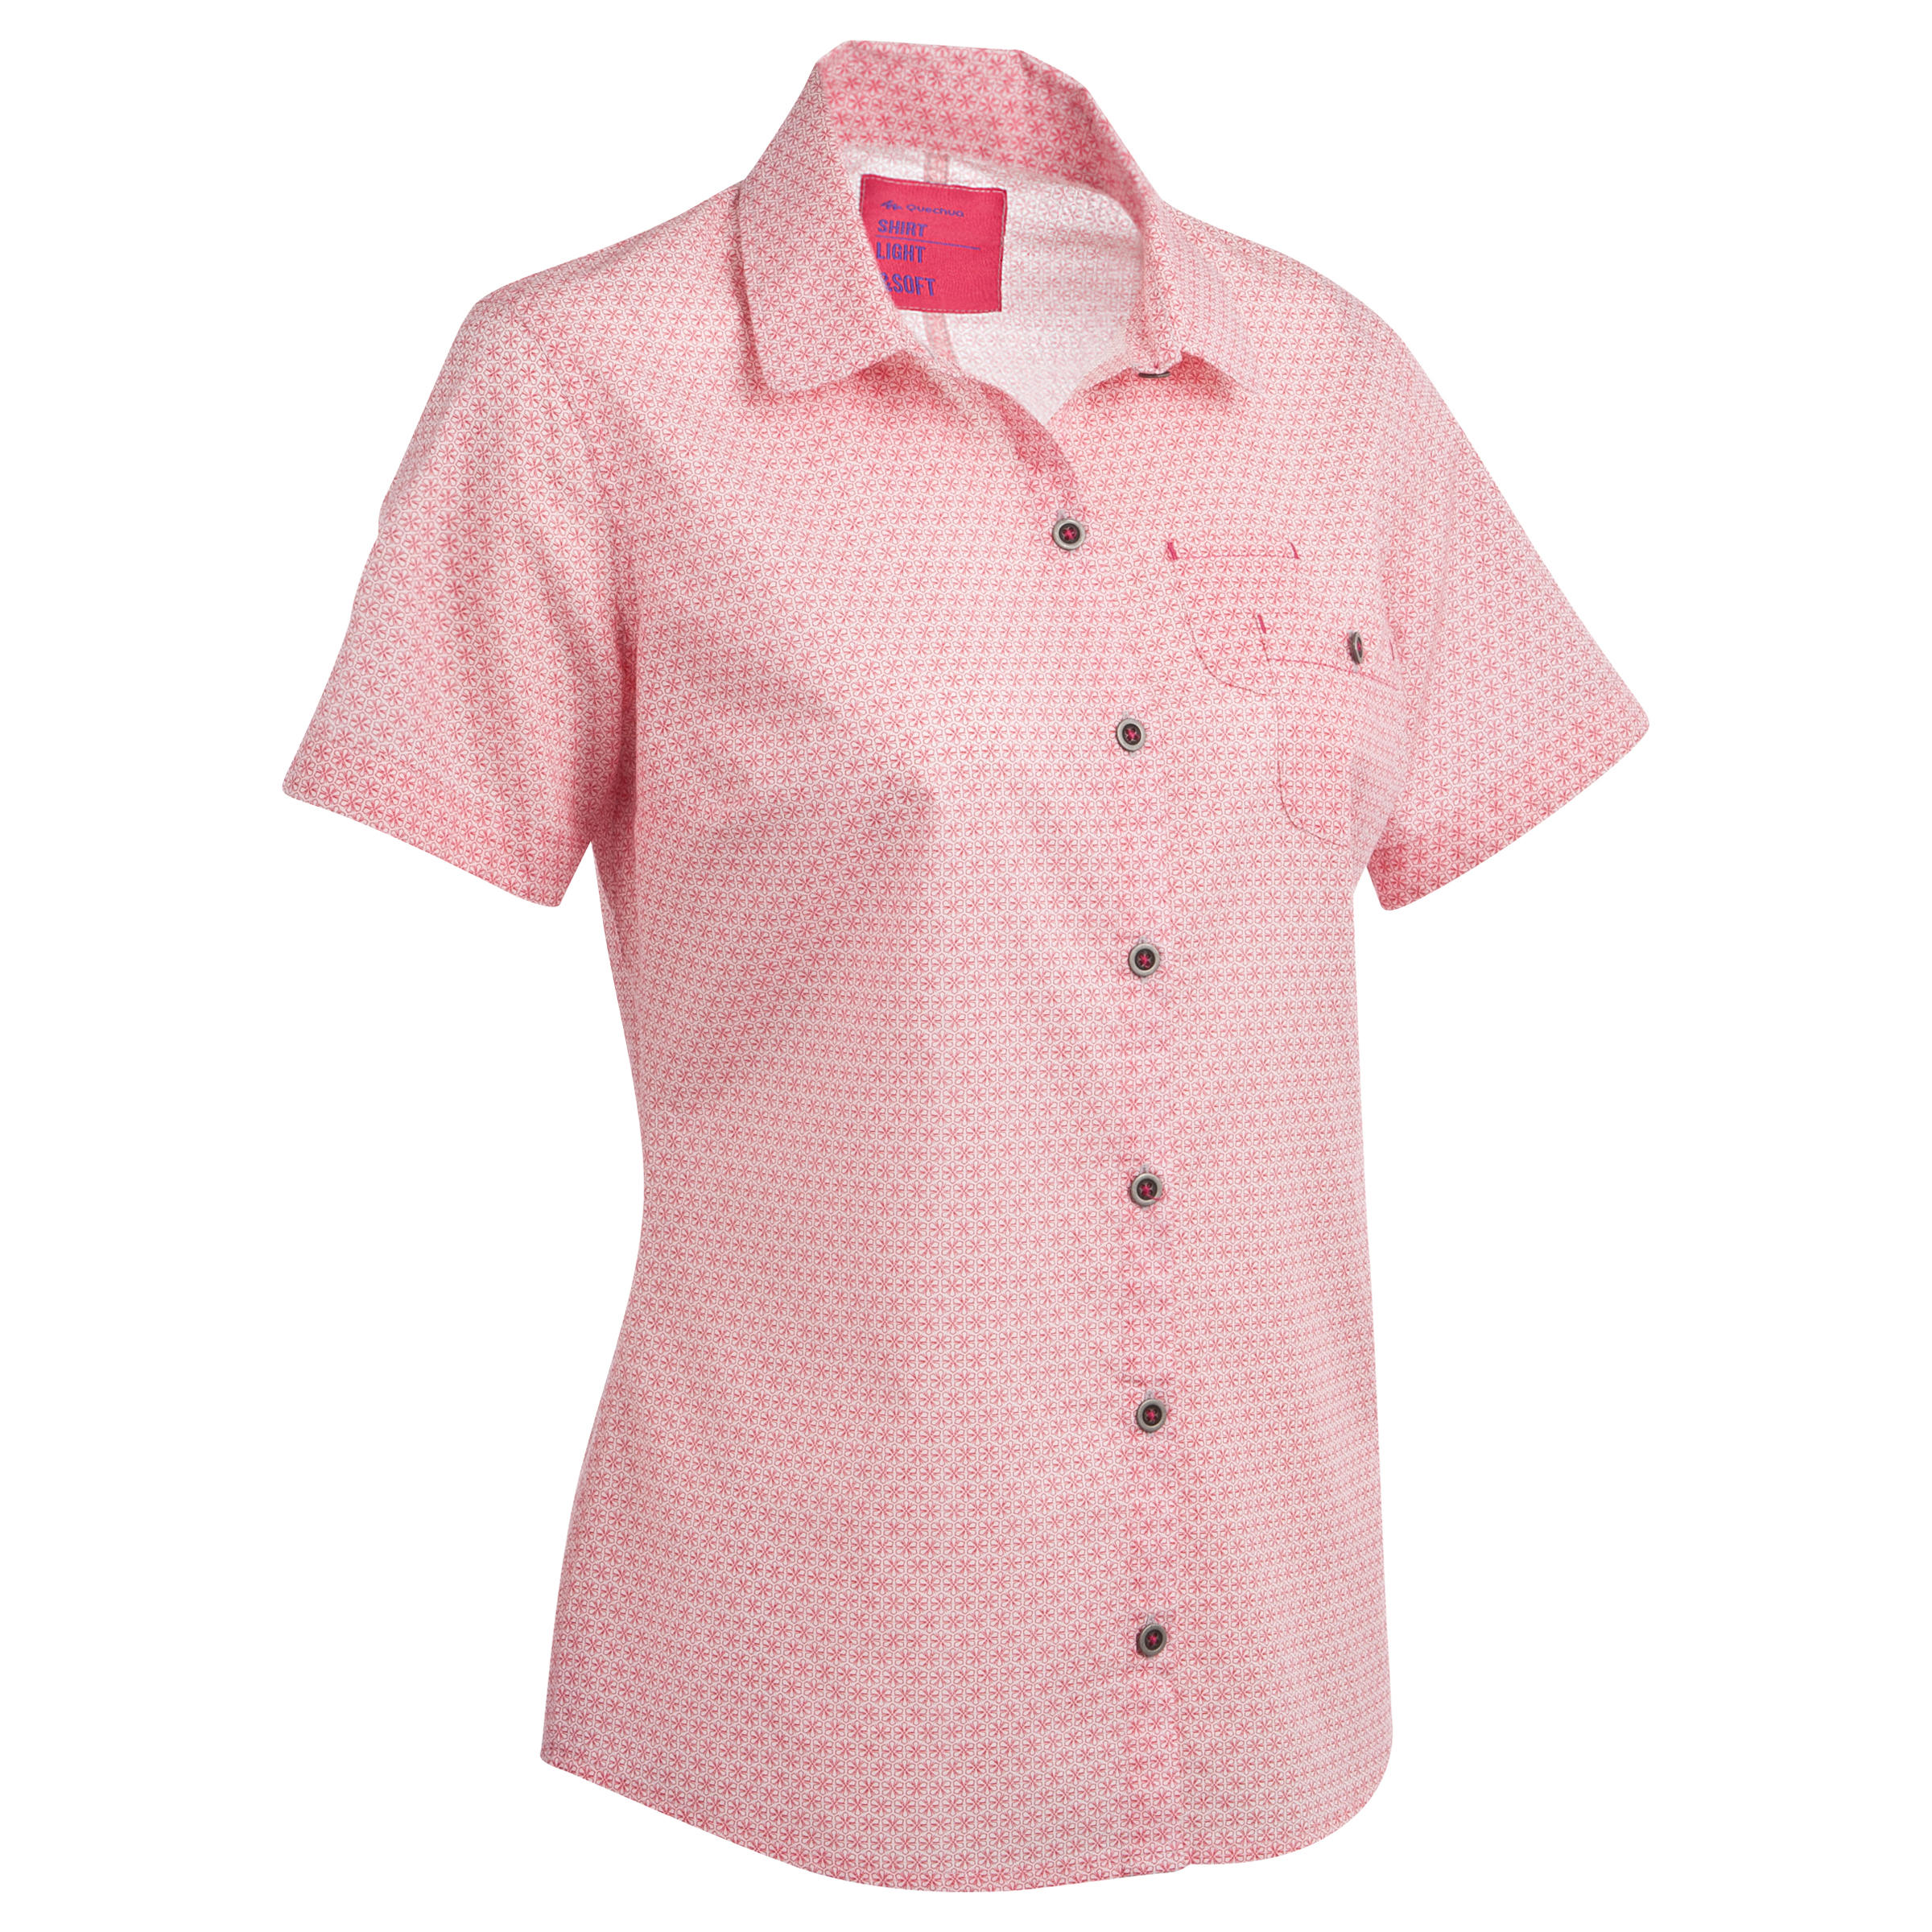 QUECHUA Arpenaz 100 women's short-sleeved hiking shirt - Pink